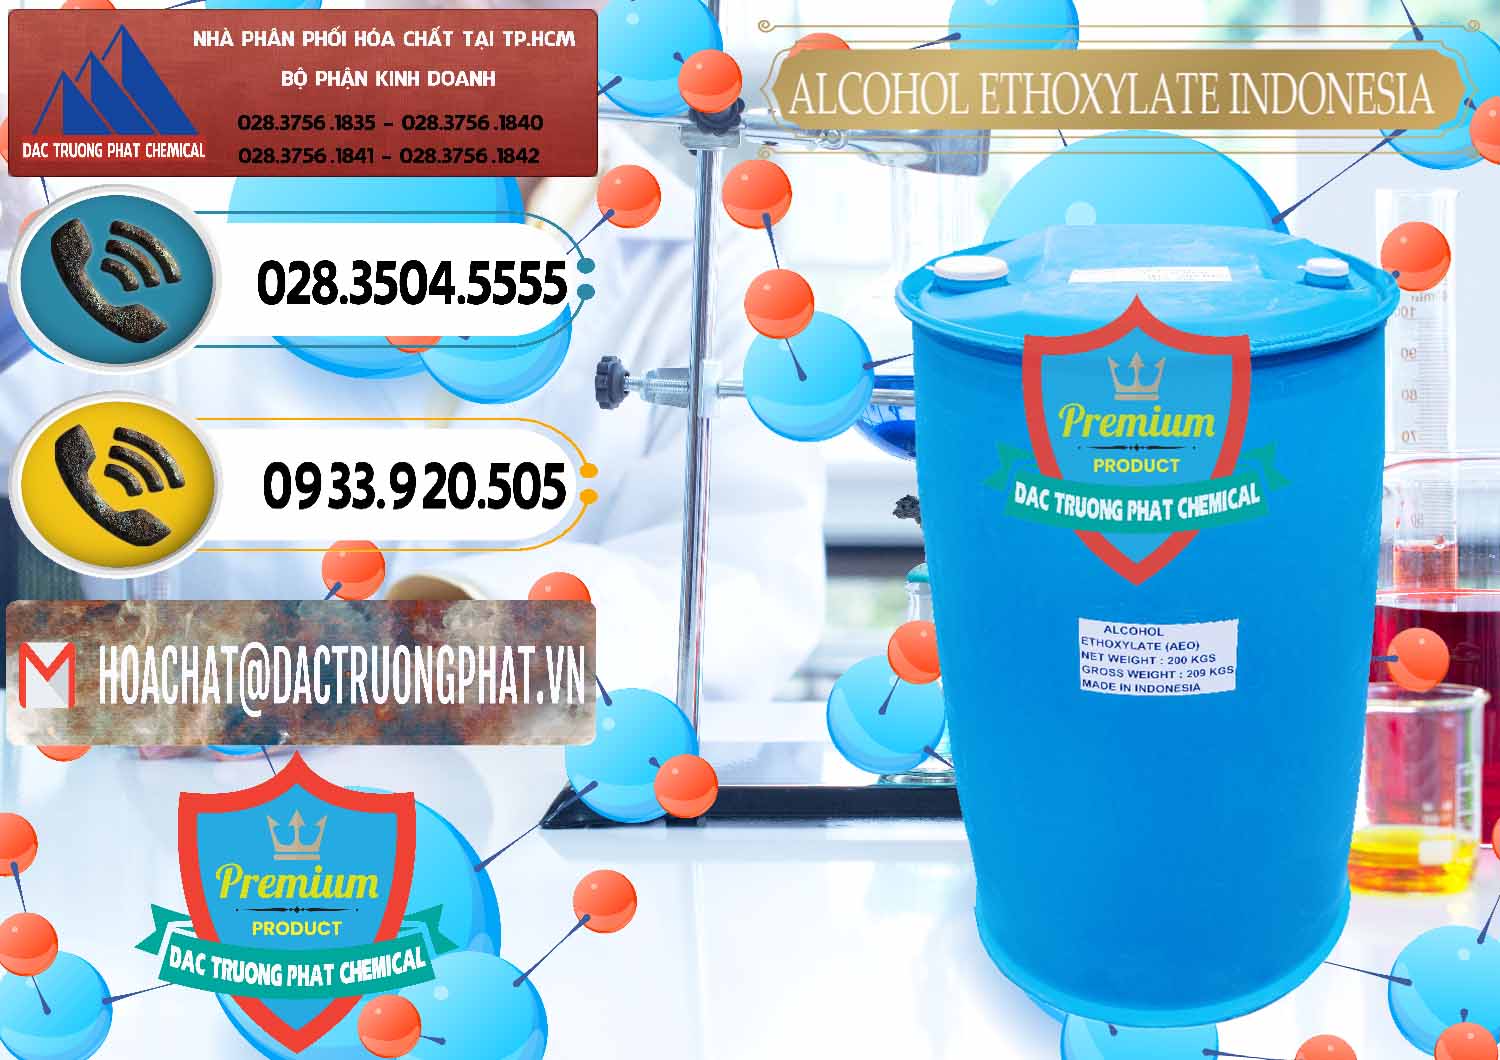 Đơn vị chuyên bán - cung ứng Alcohol Ethoxylate Indonesia - 0308 - Nơi cung cấp và bán hóa chất tại TP.HCM - hoachatdetnhuom.vn